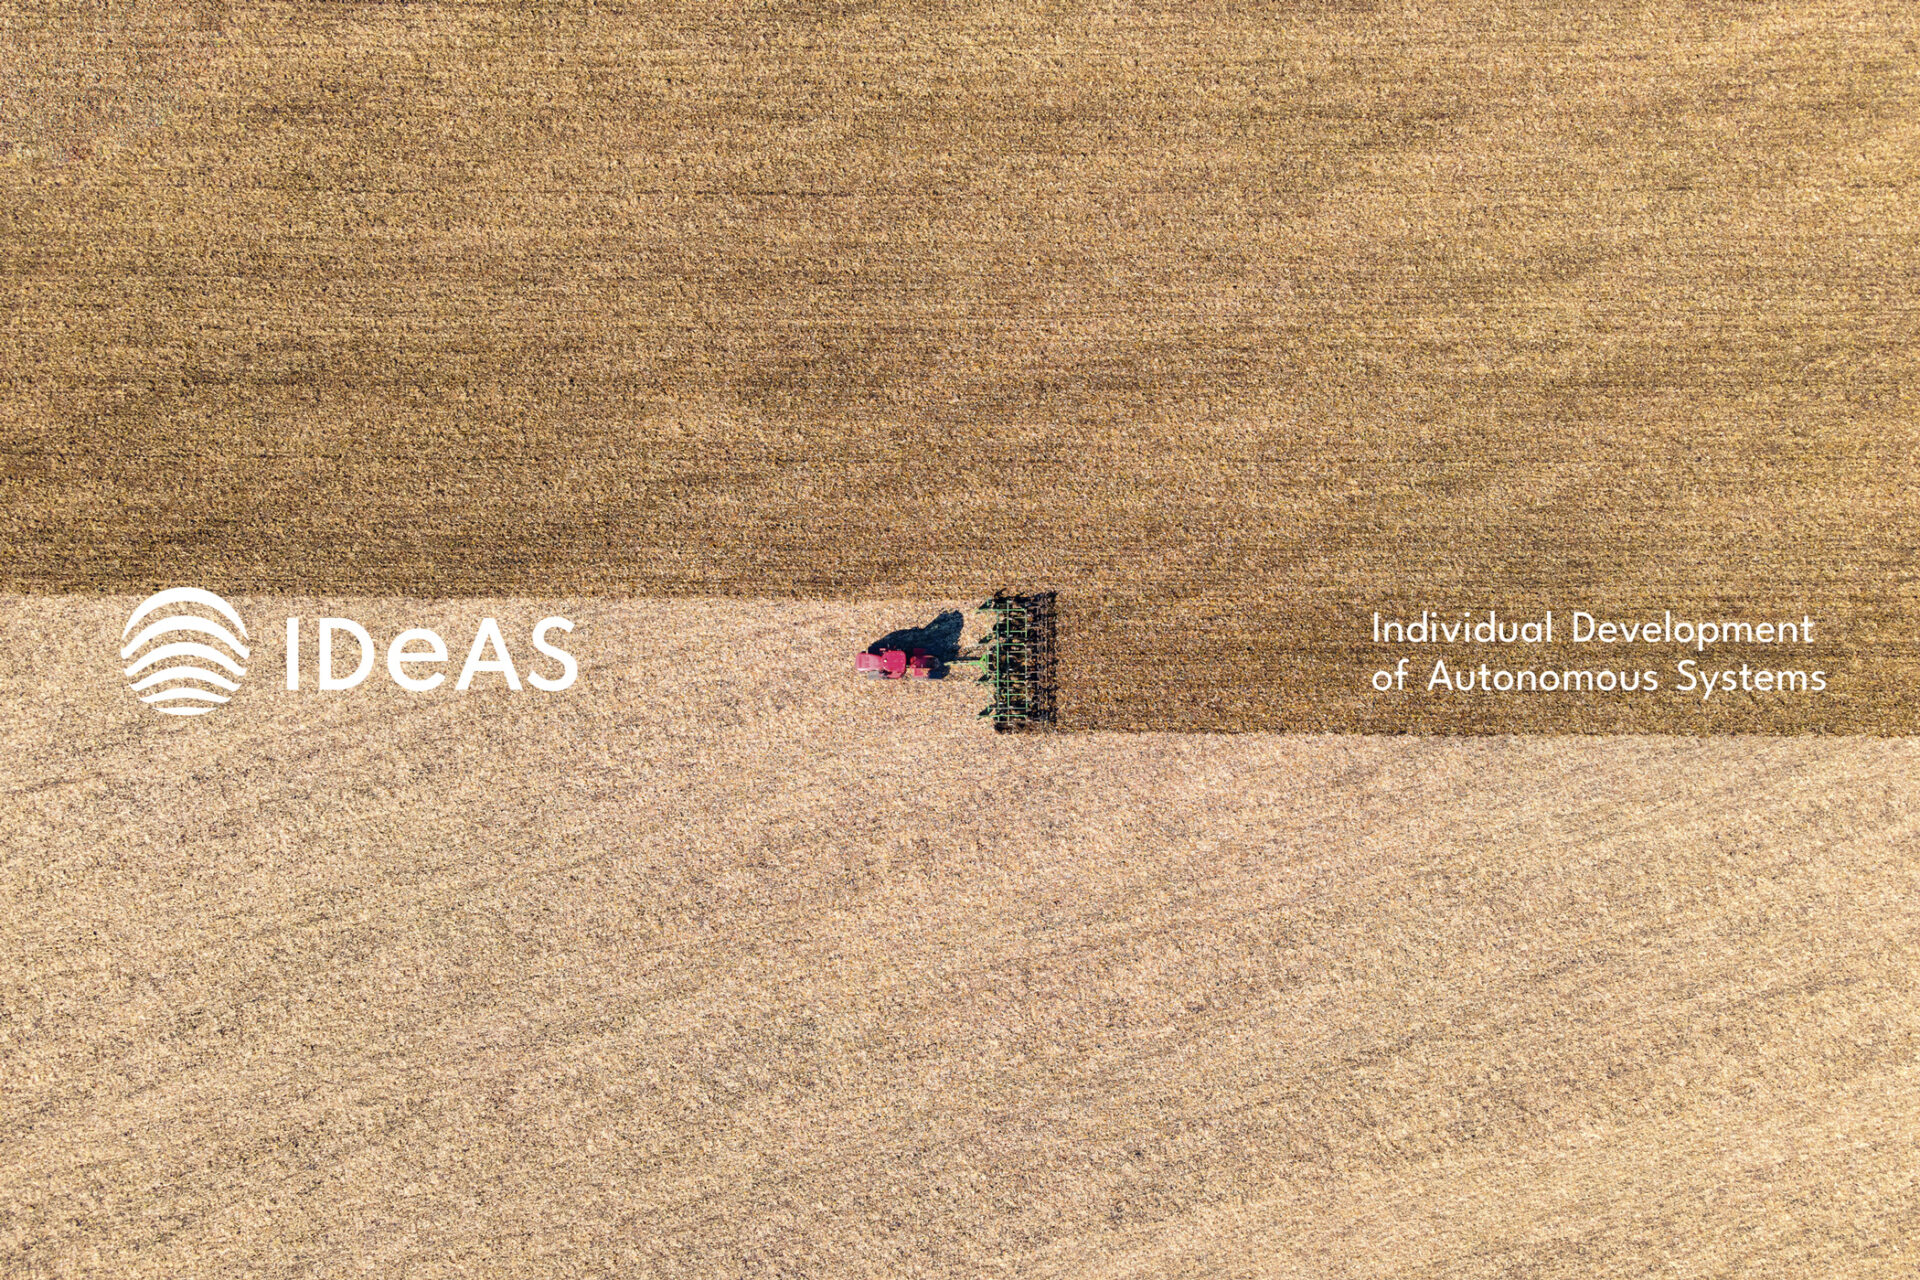 IDeAS Logo links und Firmenbezeichnung rechts des Bildrandes abgebildet. Mittig im Hintergrund ist ein Landwirtschaftsfahrzeug bei der Arbeit zu sehen.